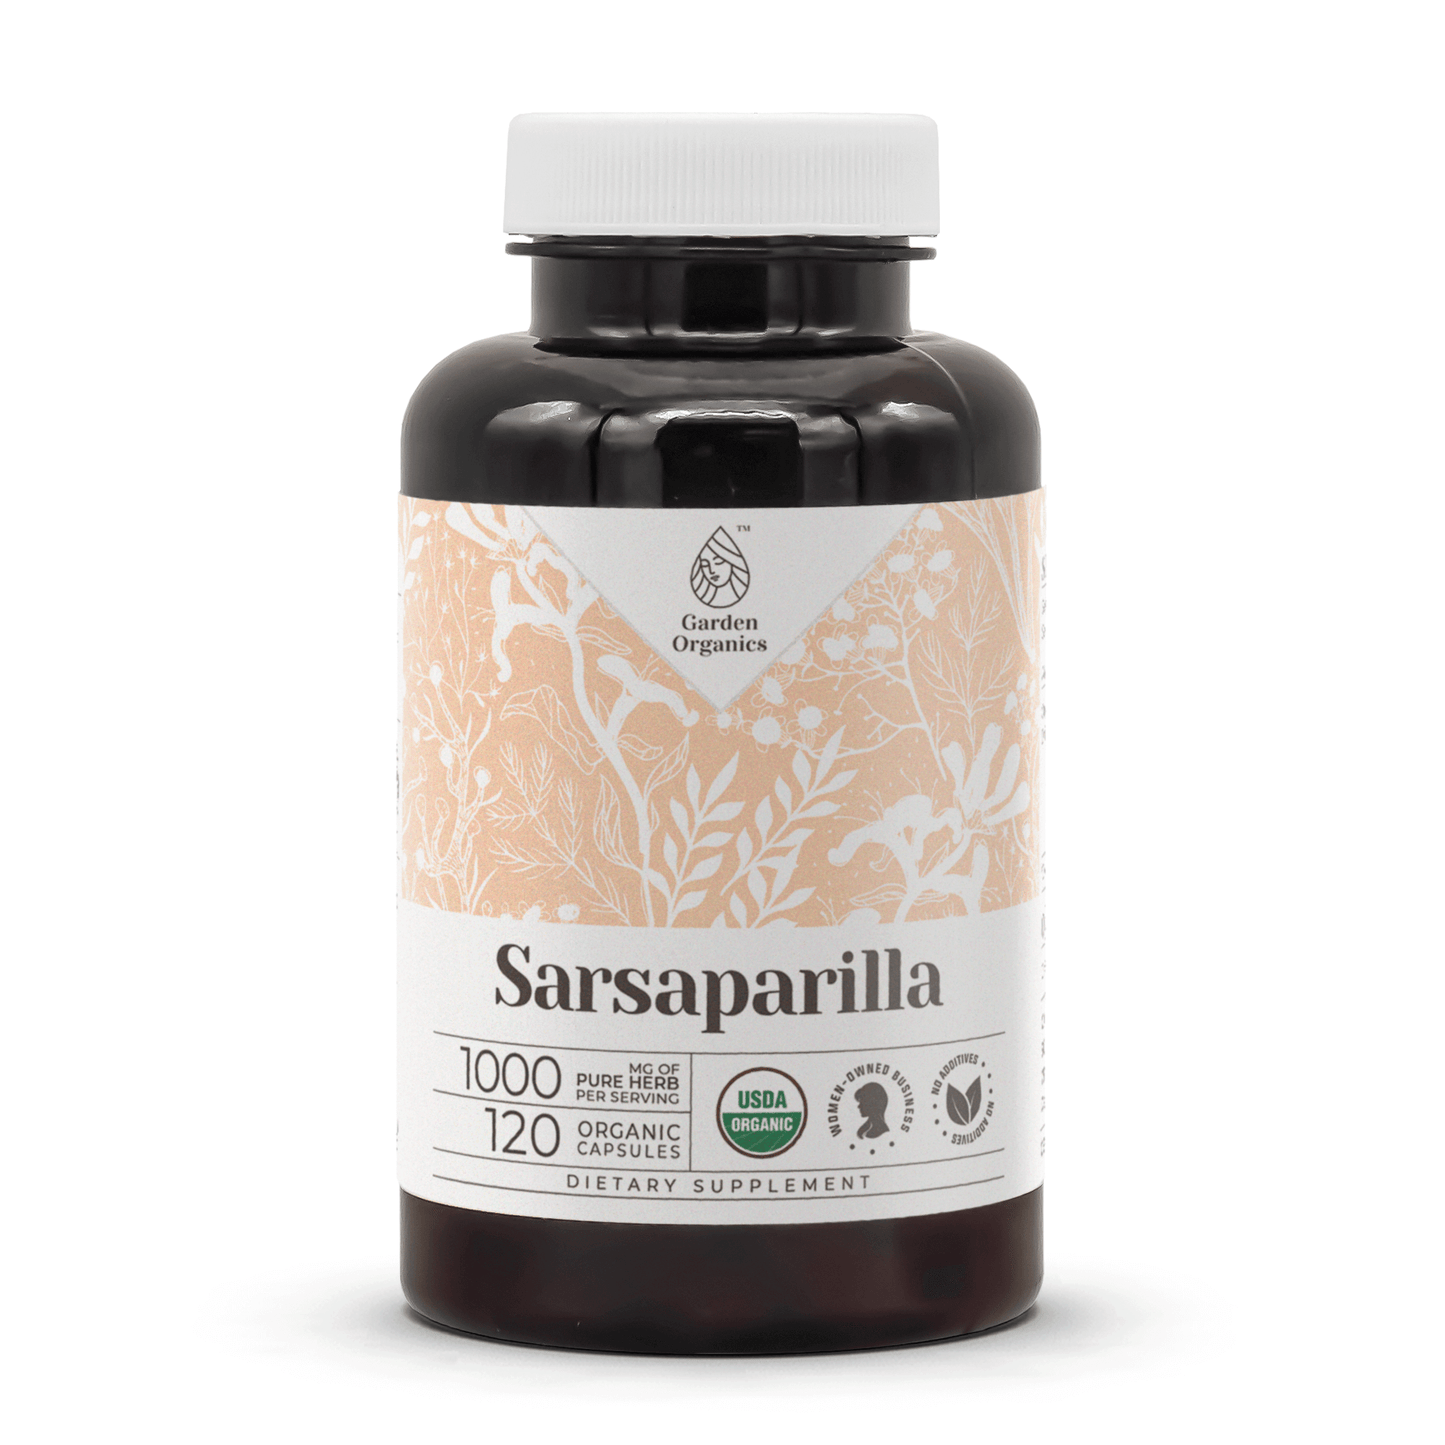 Sarsaparilla Capsules